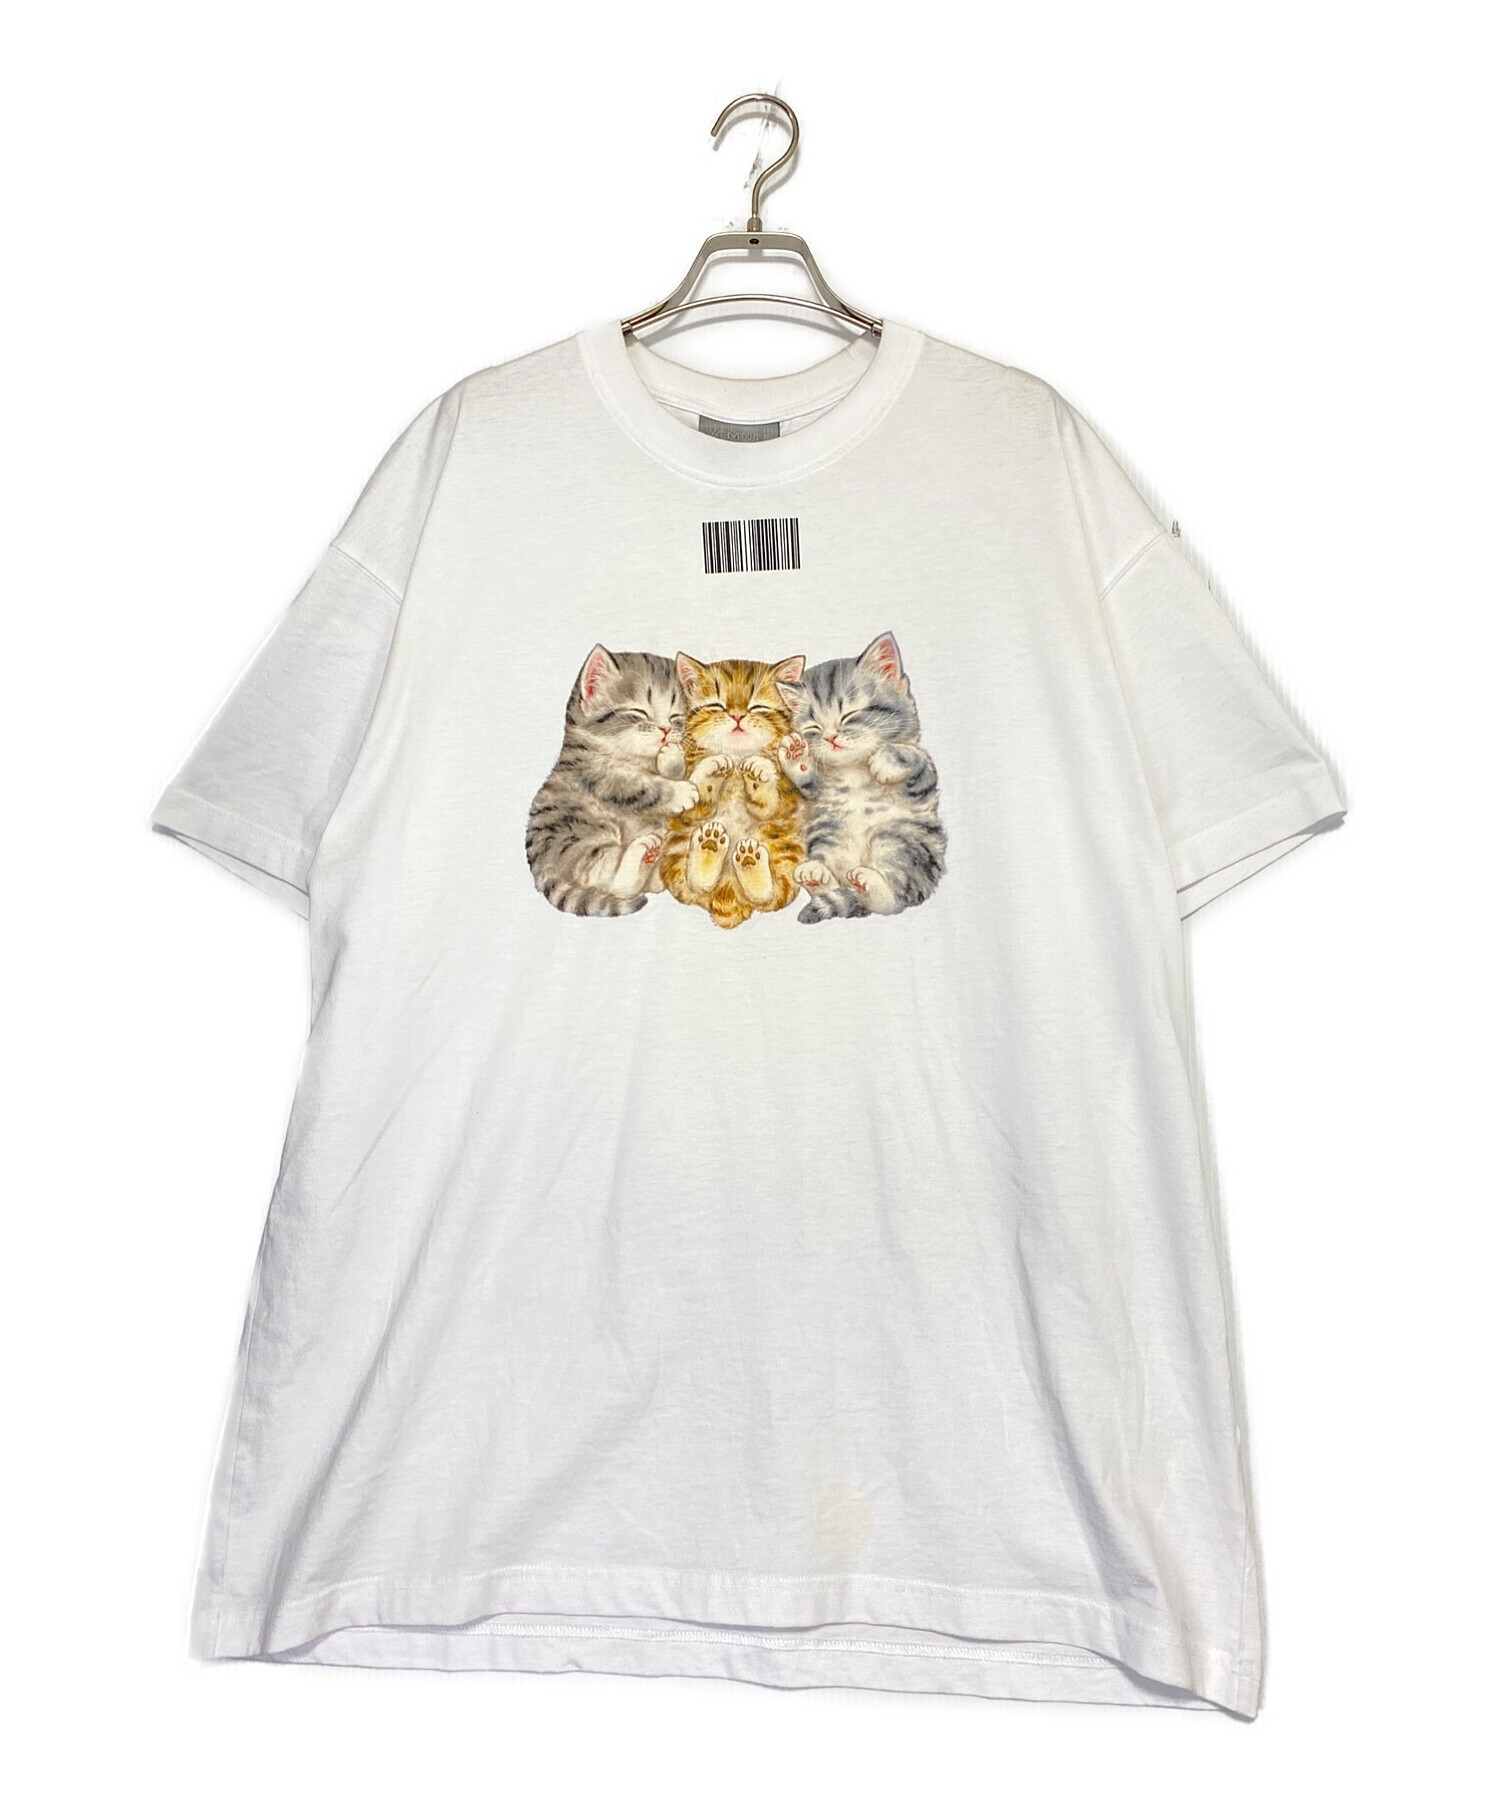 レシートタグもお付けしますVTMNTS cute cat t-shirt